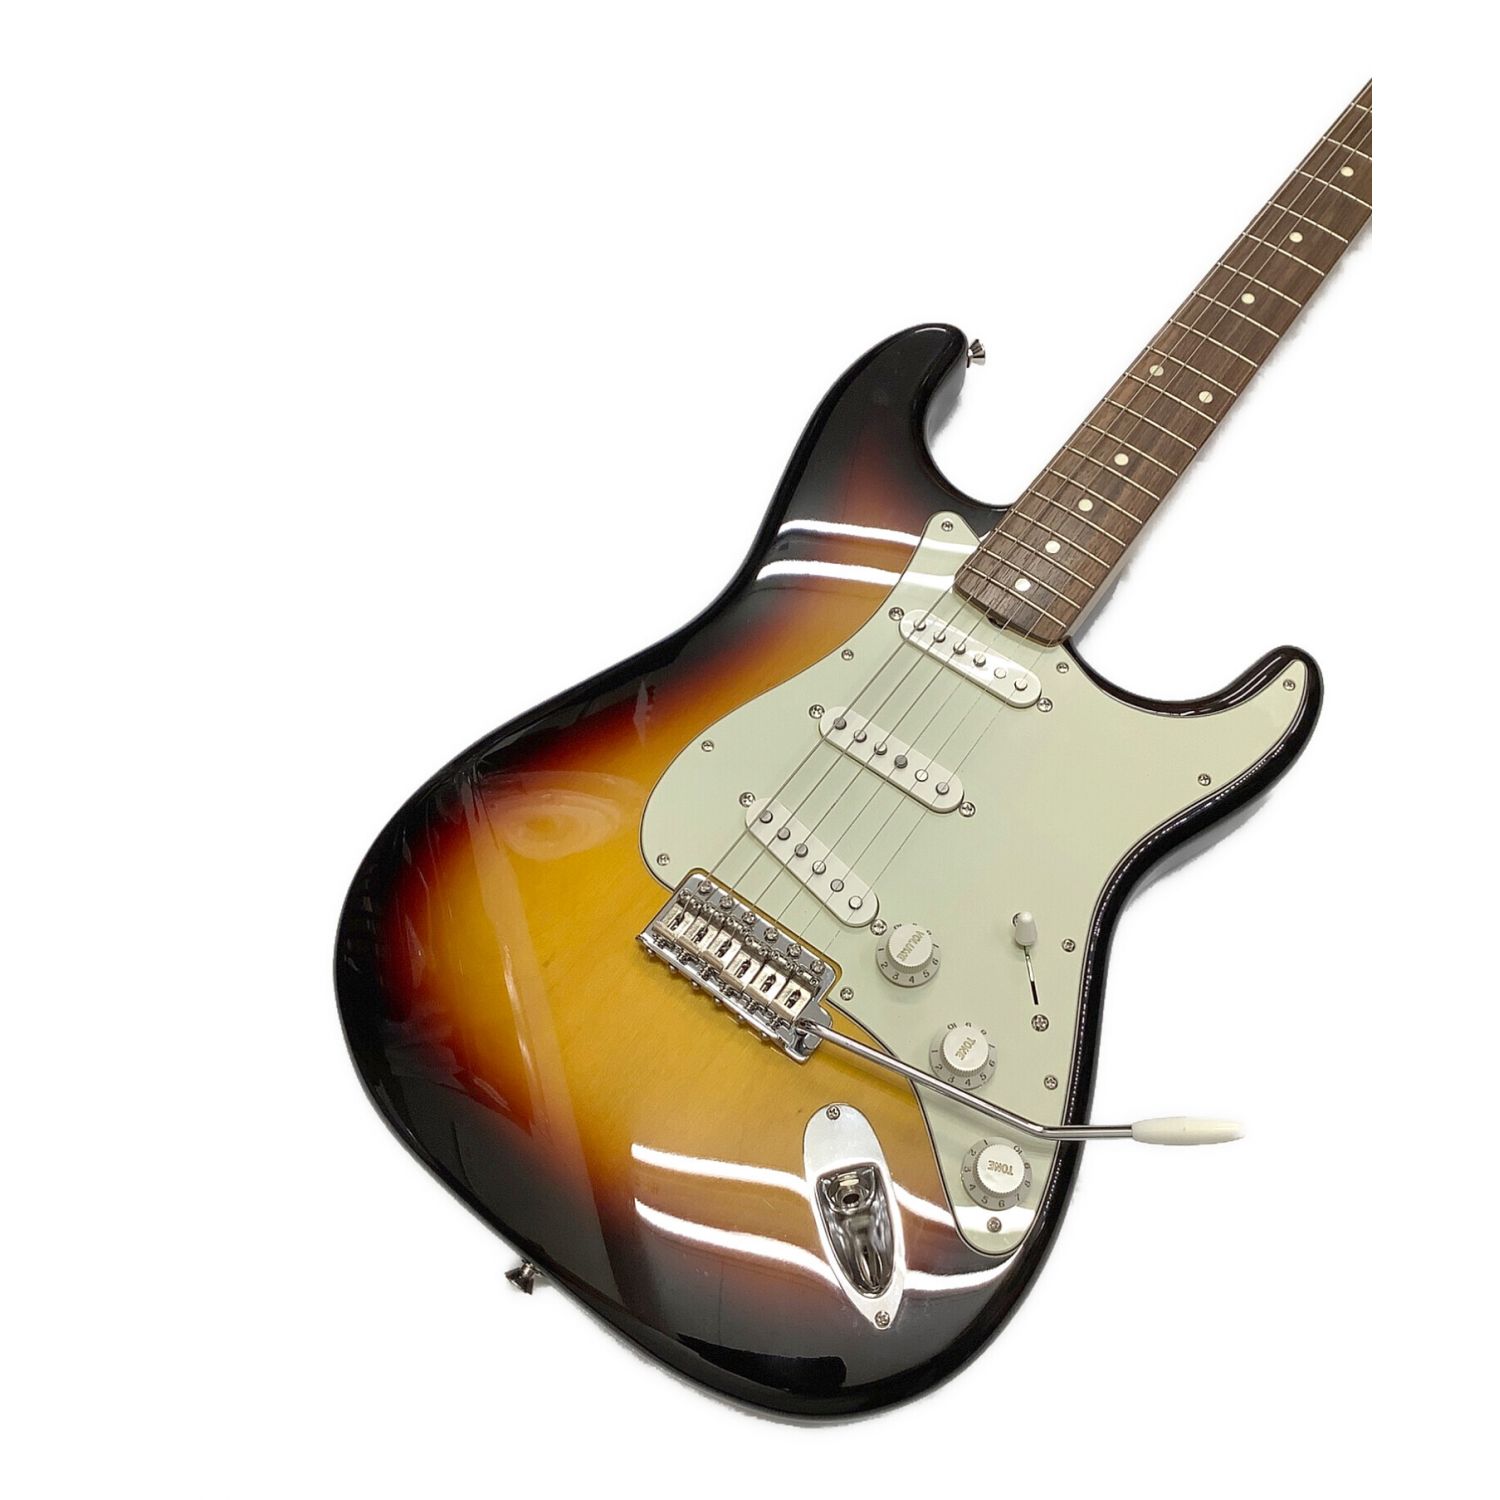 Nシリアル】Fender Japan ストラトキャスター - エレキギター